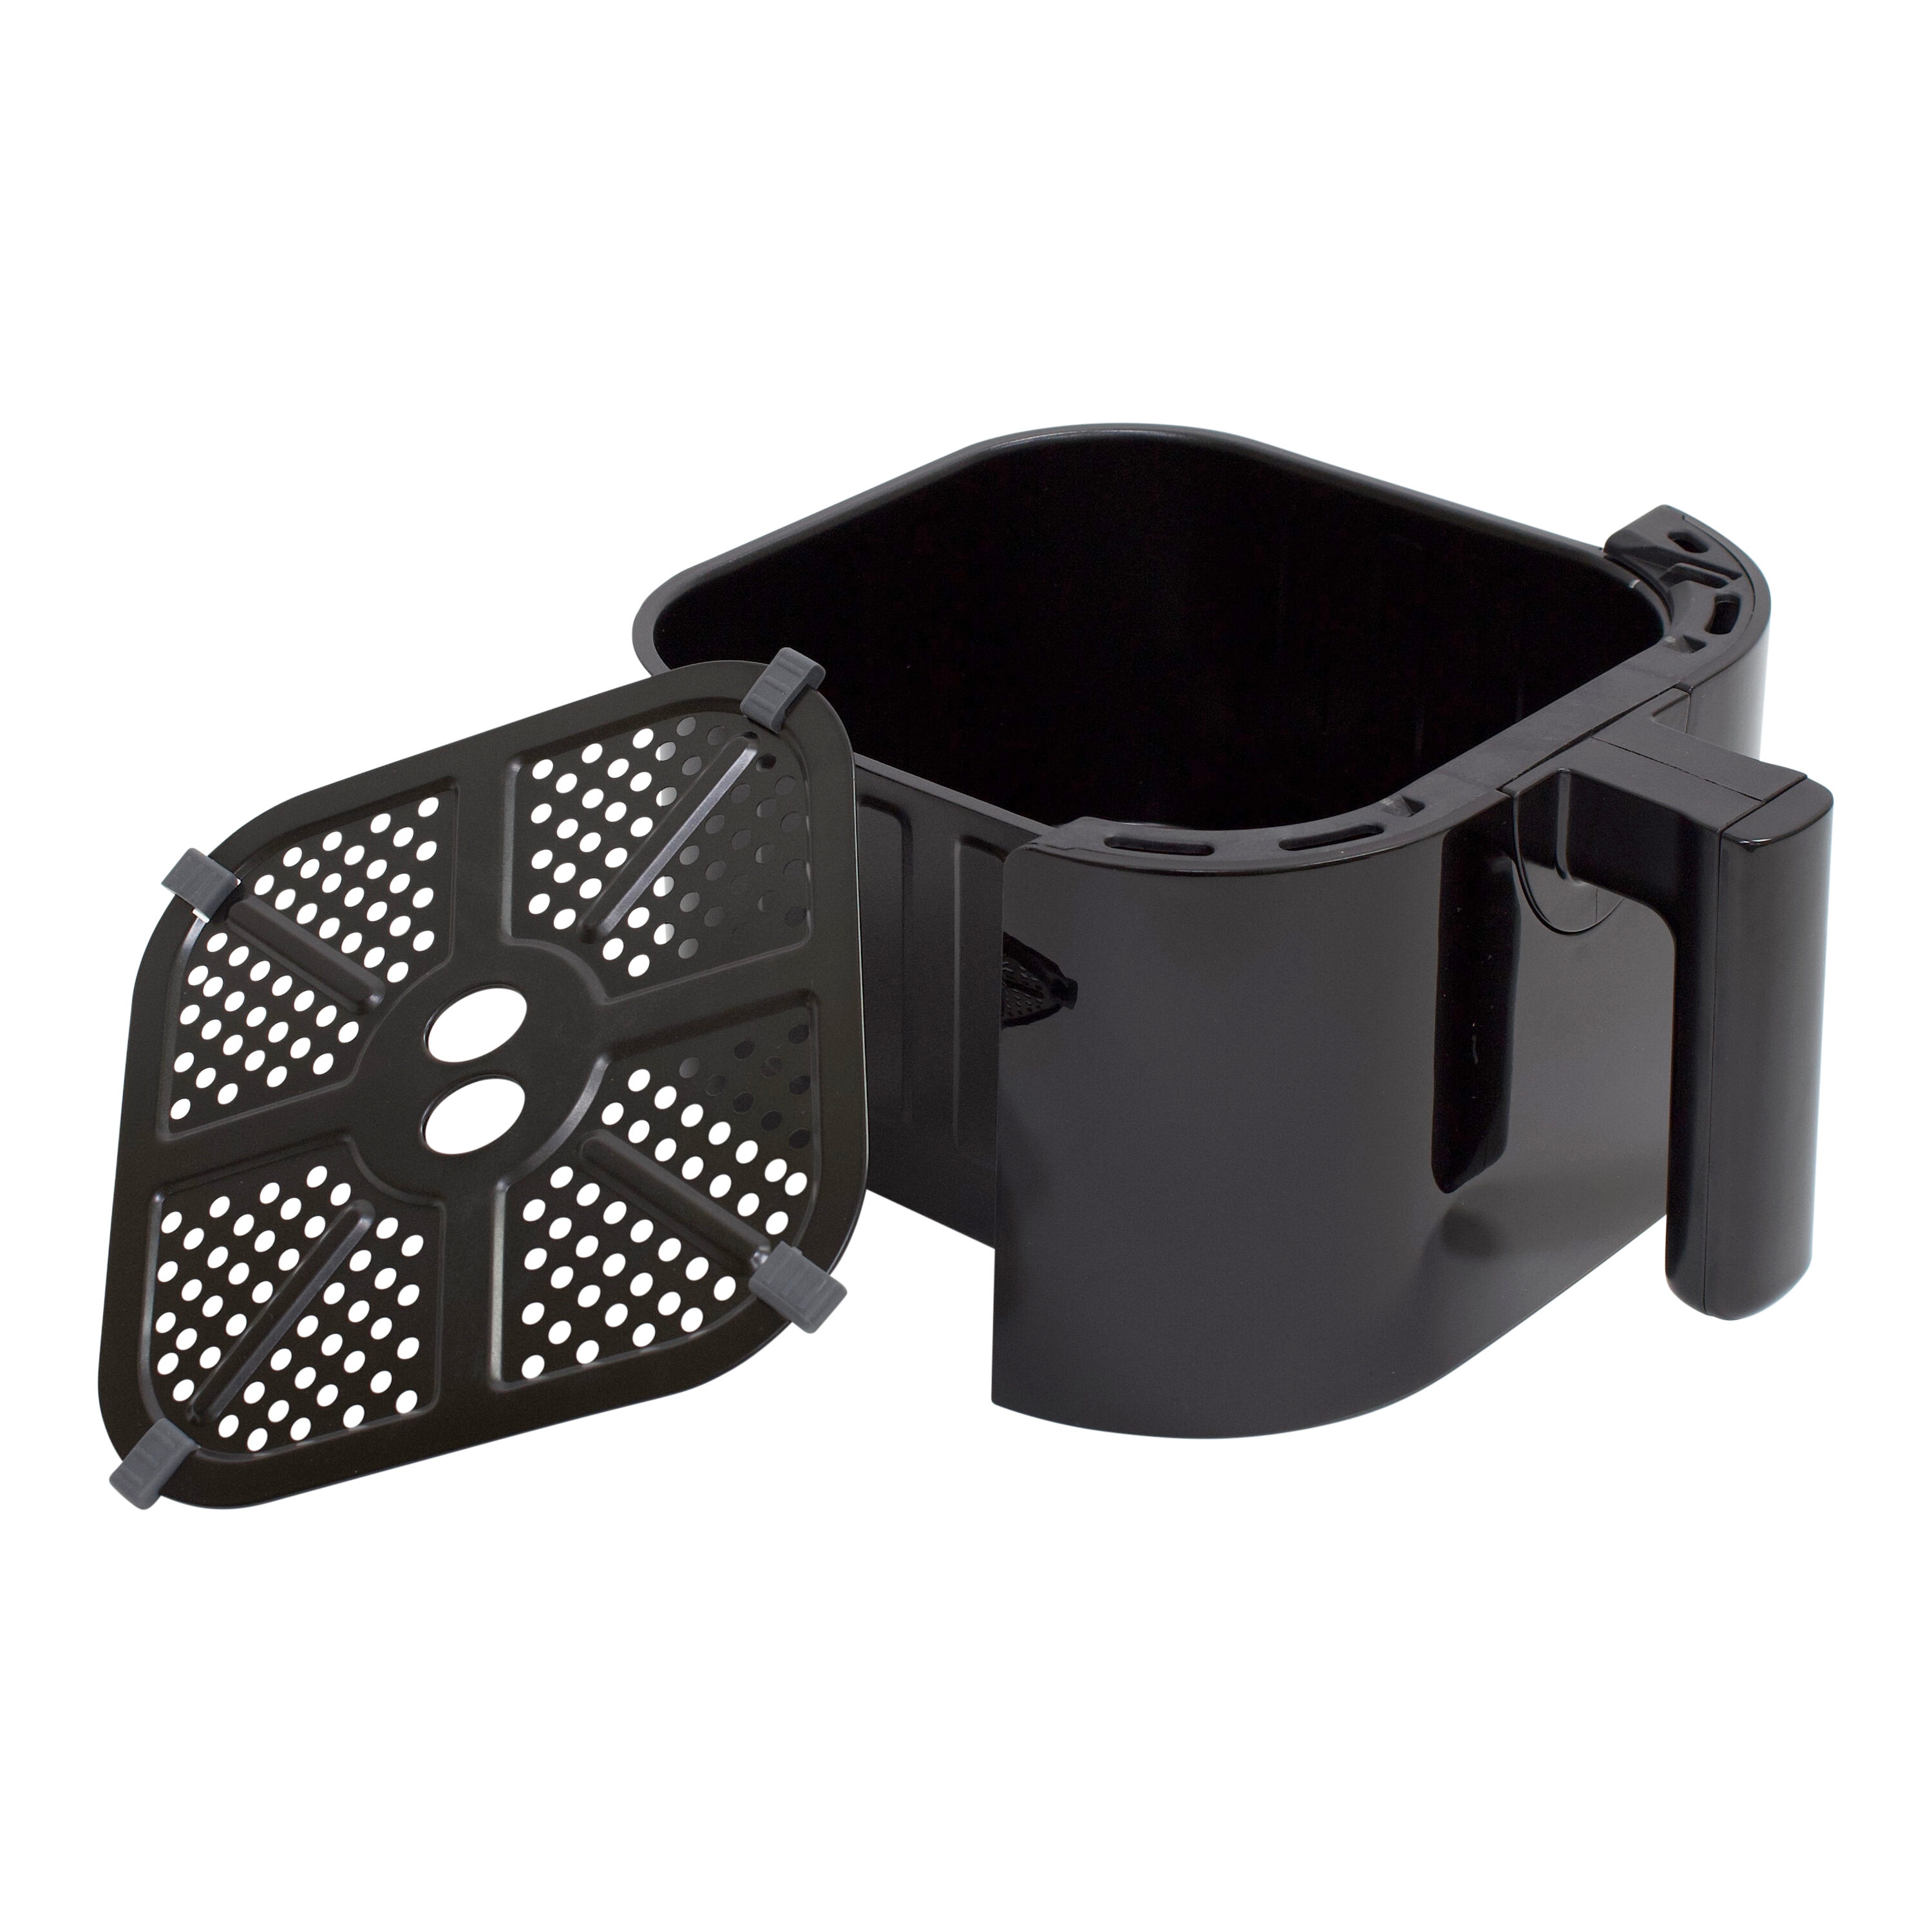 West Bend 10-Quart Dual Basket Air Fryer in Black